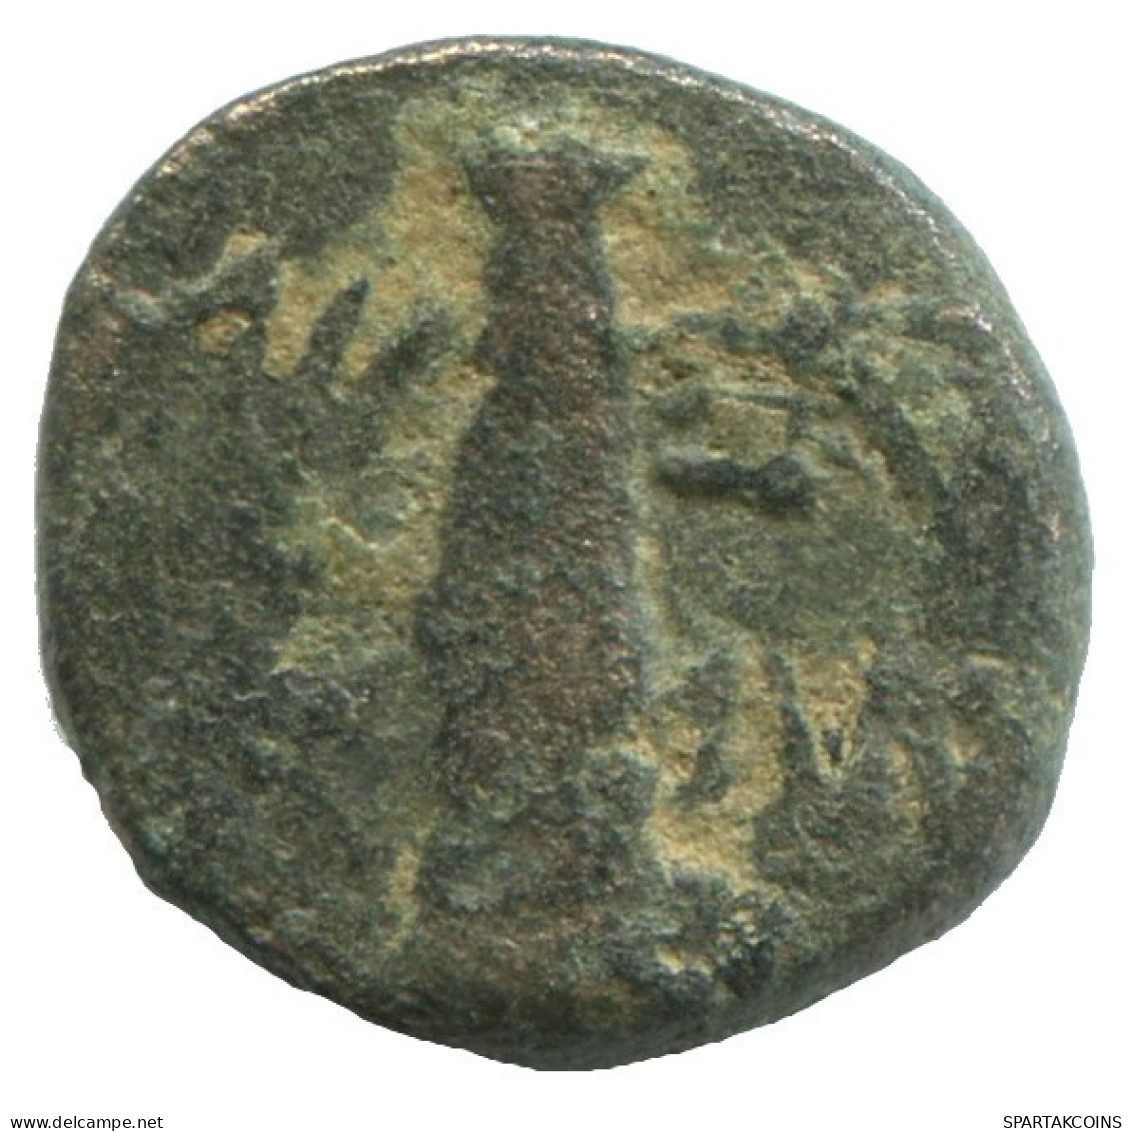 Auténtico Original GRIEGO ANTIGUO Moneda 2g/13mm #NNN1481.9.E.A - Griekenland